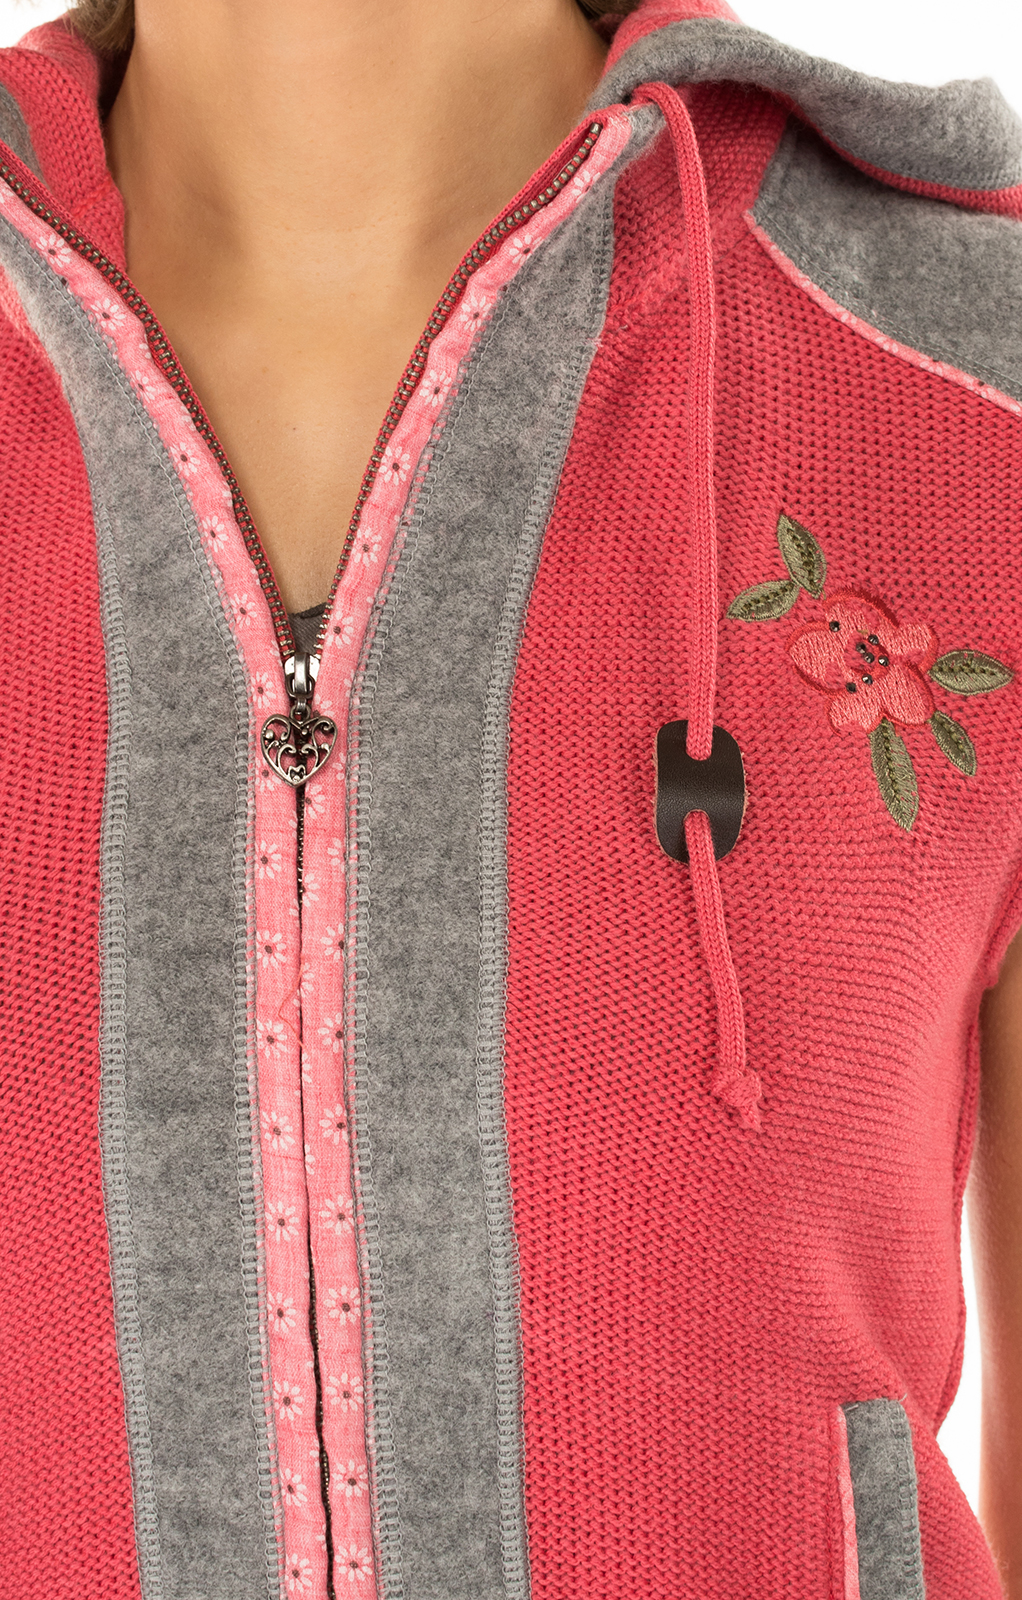 weitere Bilder von Knitted vest pink